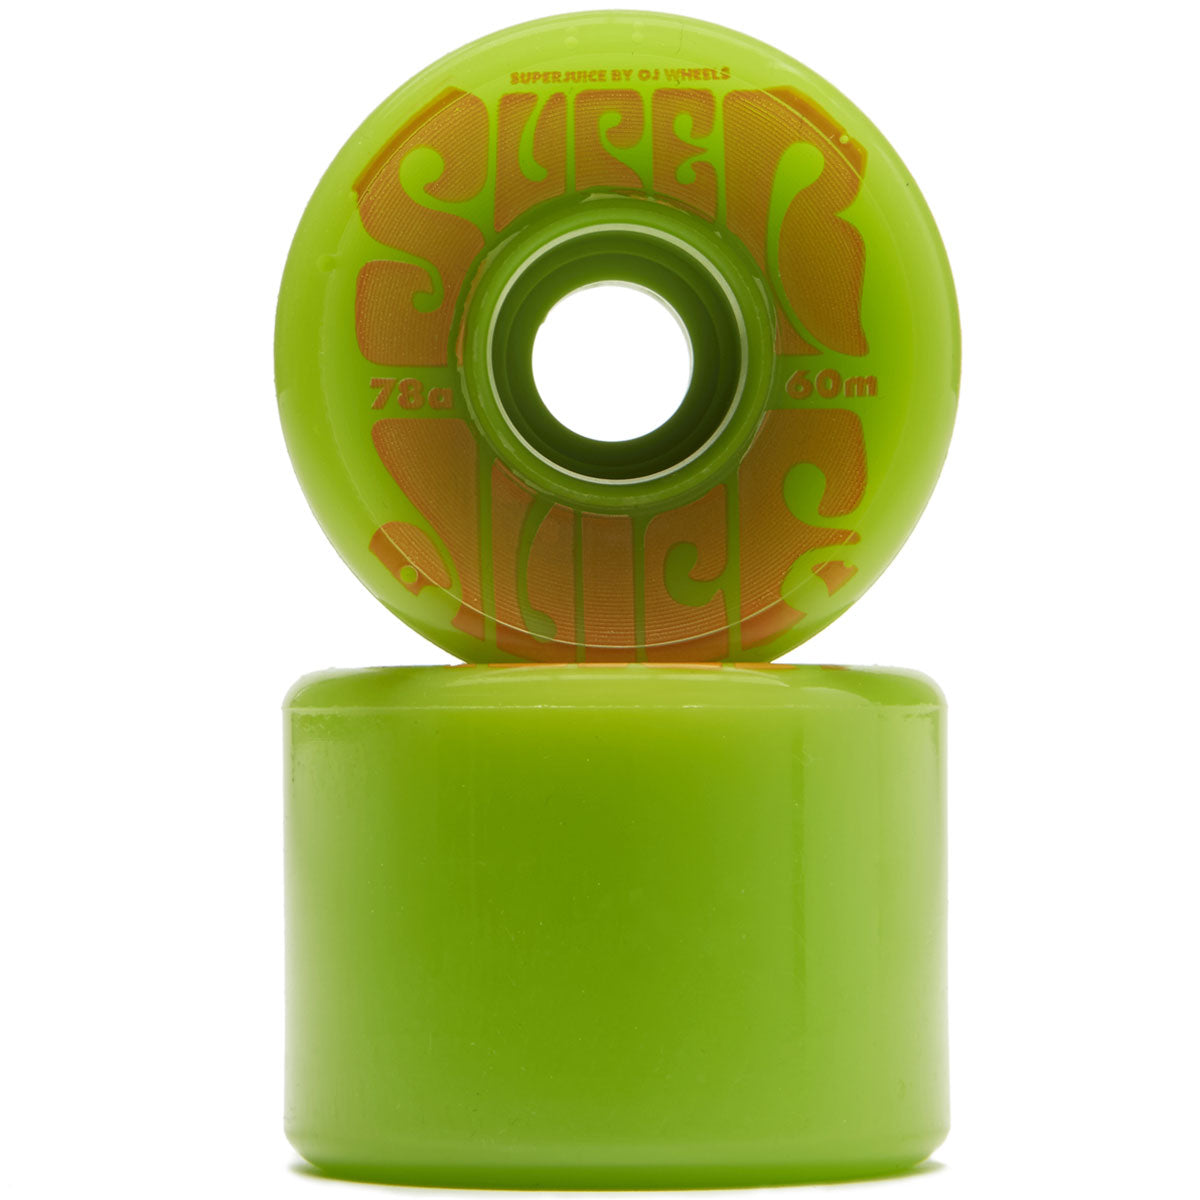 OJ Super Juice 78a Skateboard Wheels - Green - 60mm image 2